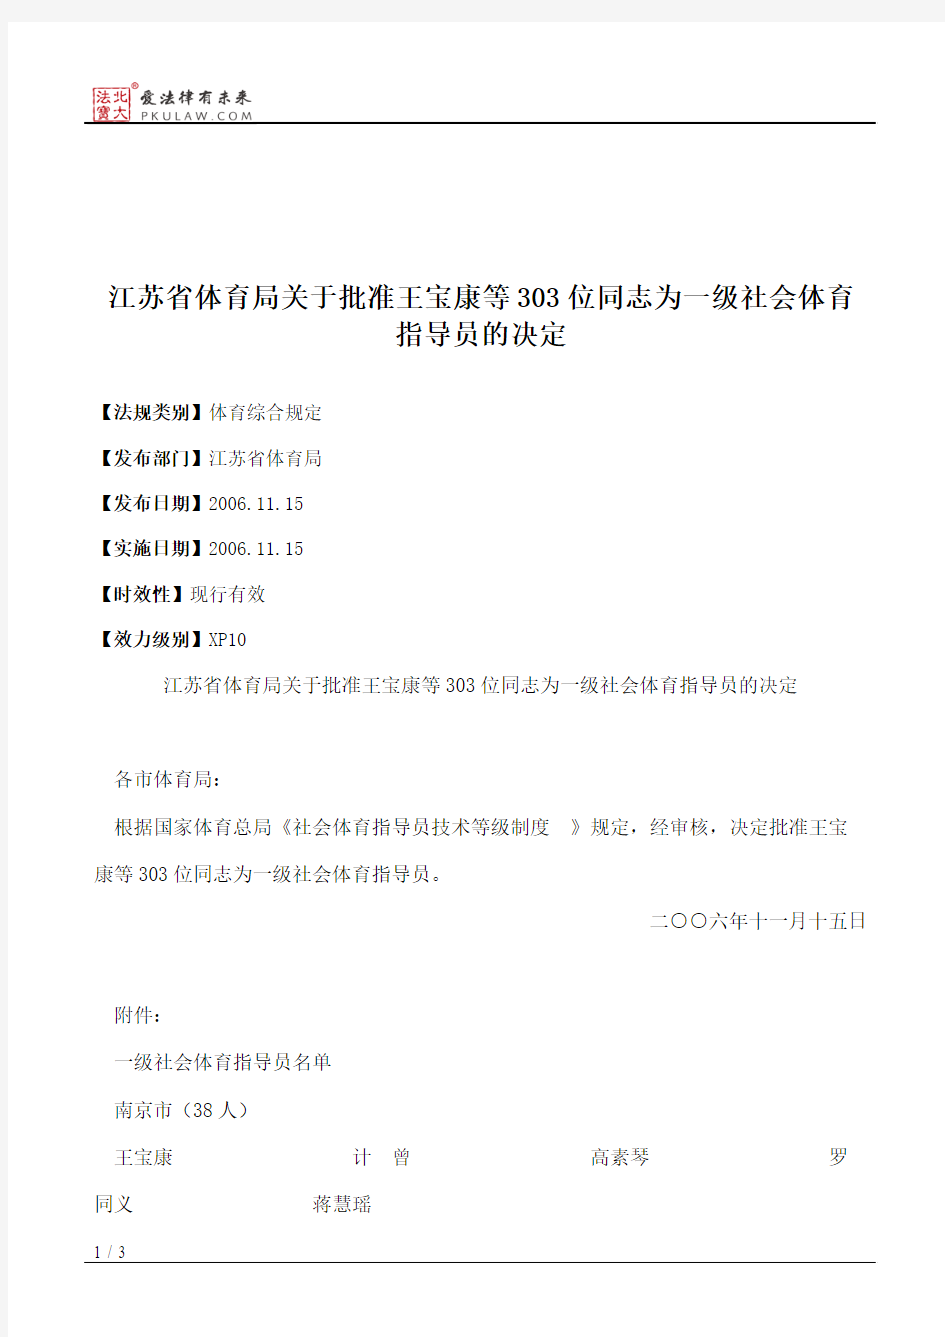 江苏省体育局关于批准王宝康等303位同志为一级社会体育指导员的决定